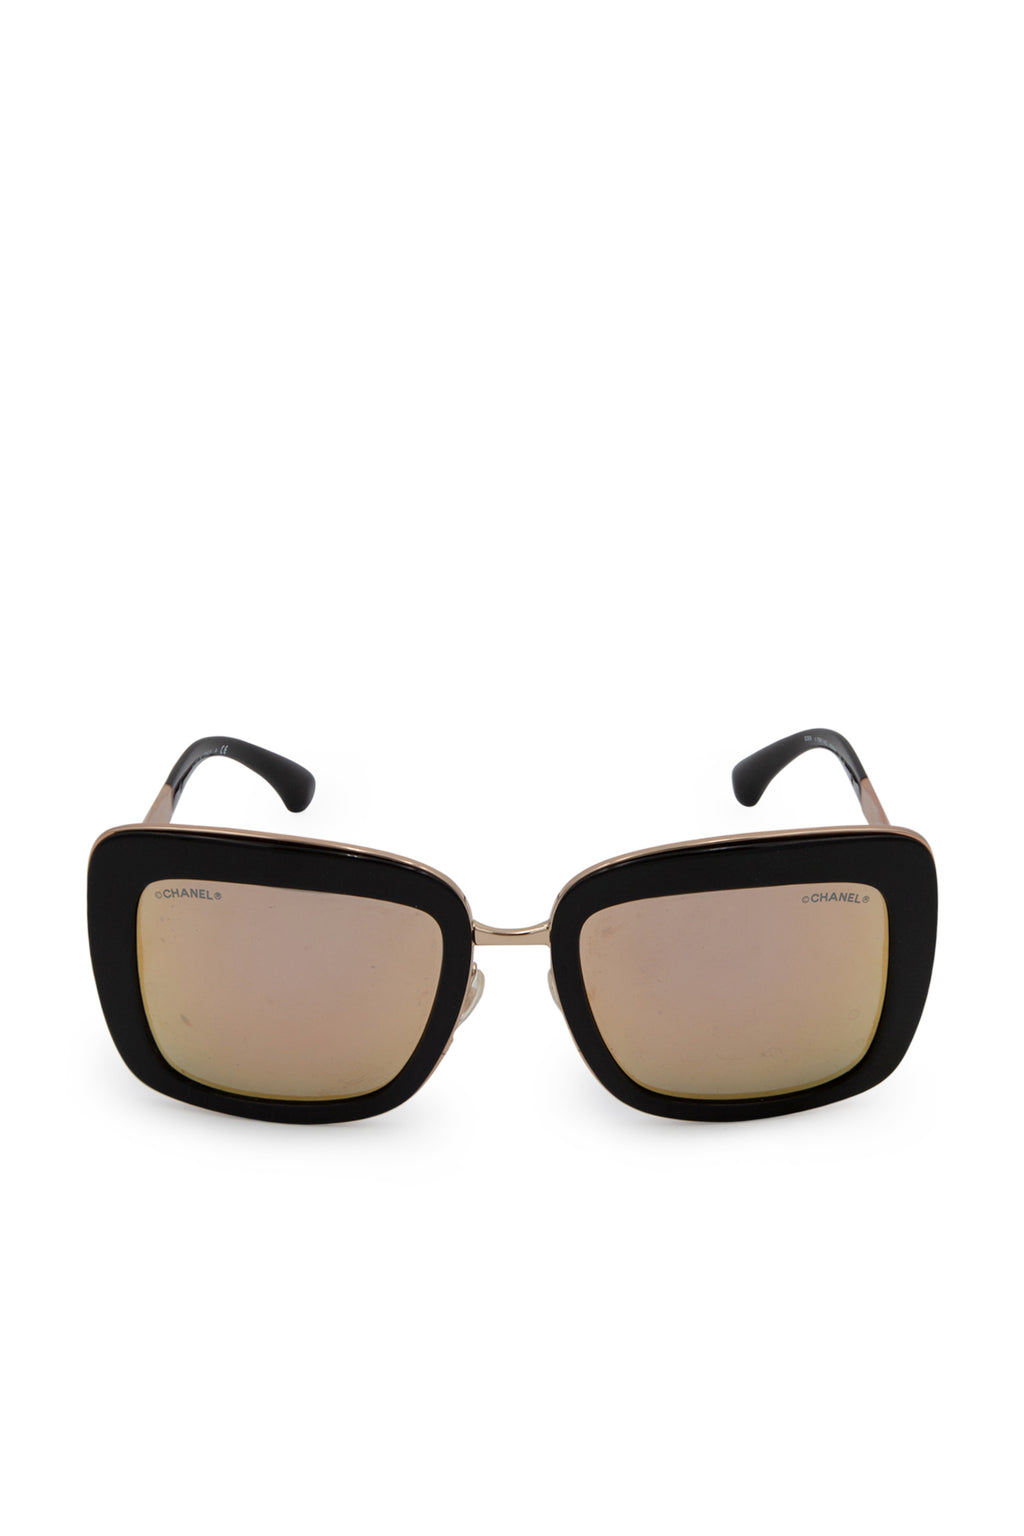 chanel square acetate sunglasses